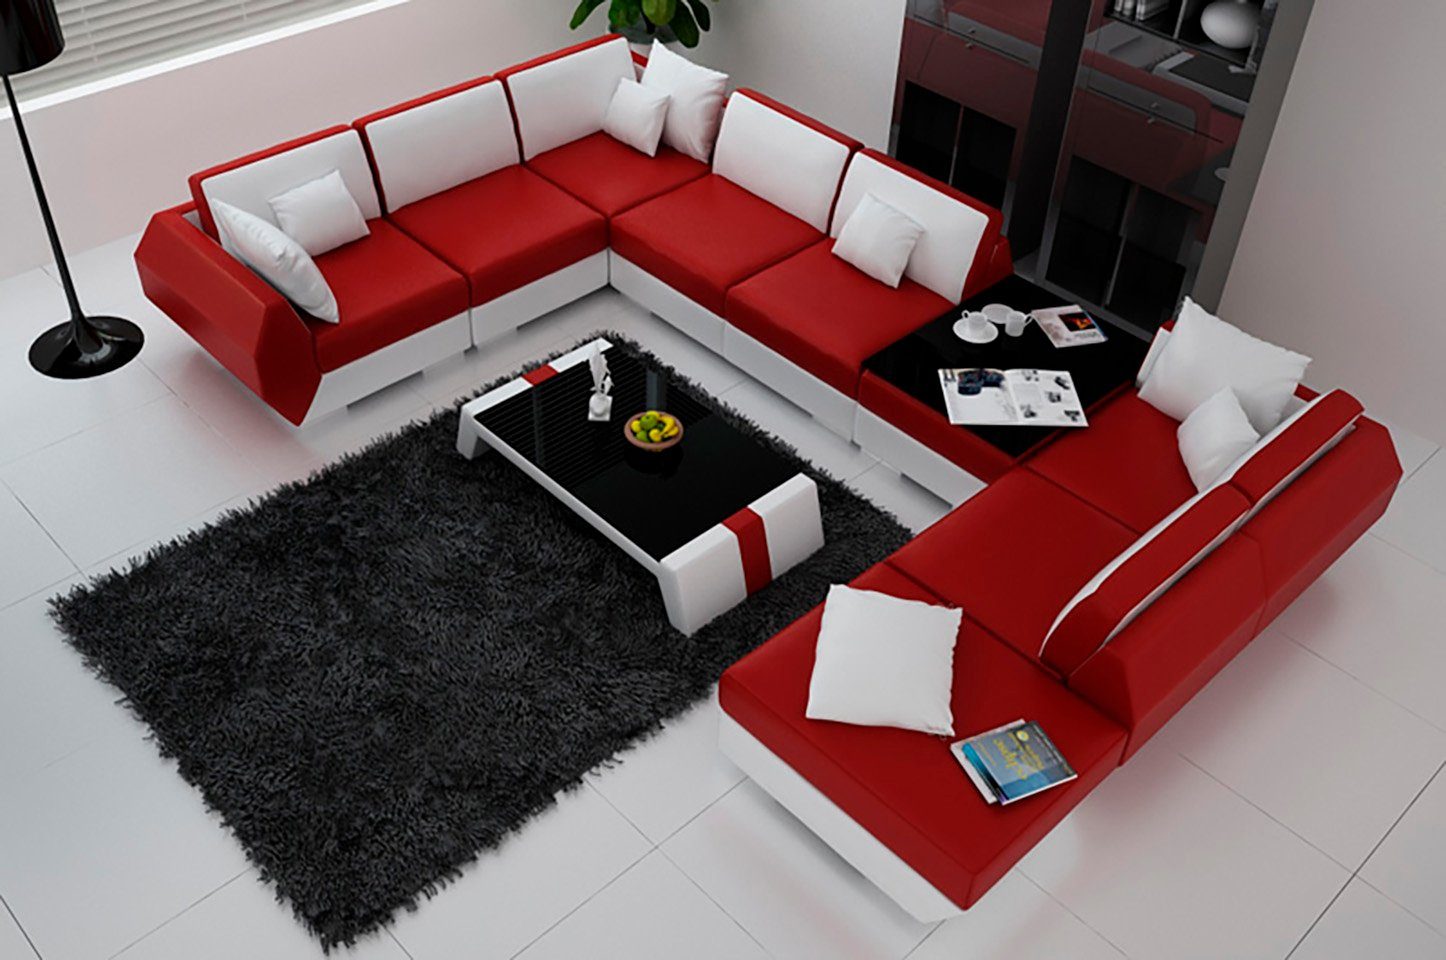 JVmoebel Ecksofa, Ledersofa Couch Sofa Neu Ecksofa Eck Design Modern Sofa